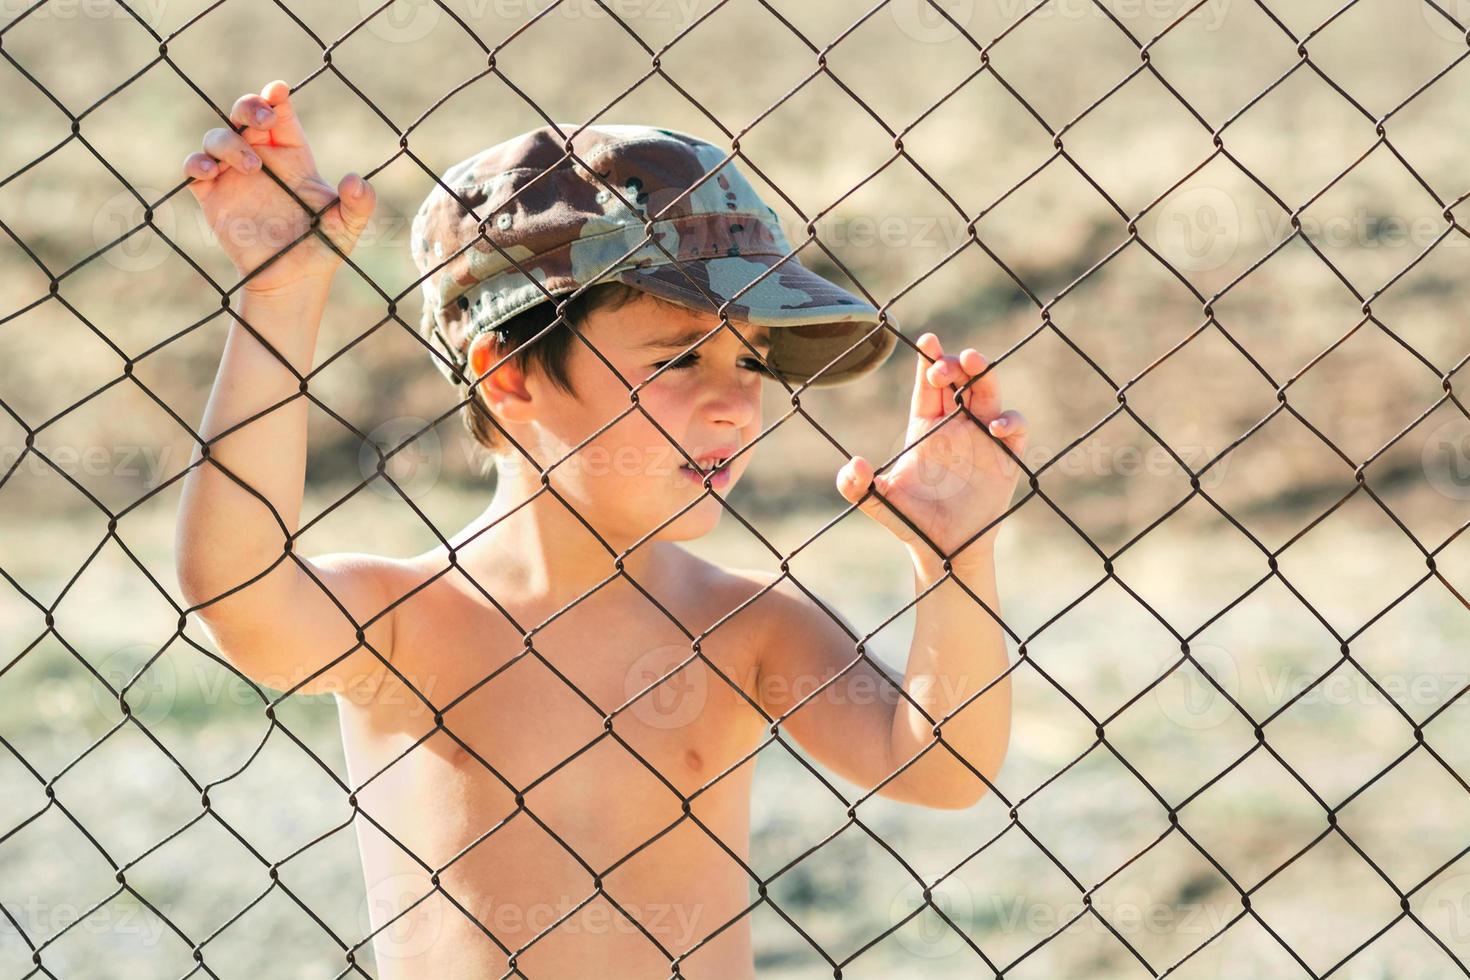 enfant triste dans une casquette militaire derrière une clôture. arrêter le concept de guerre photo